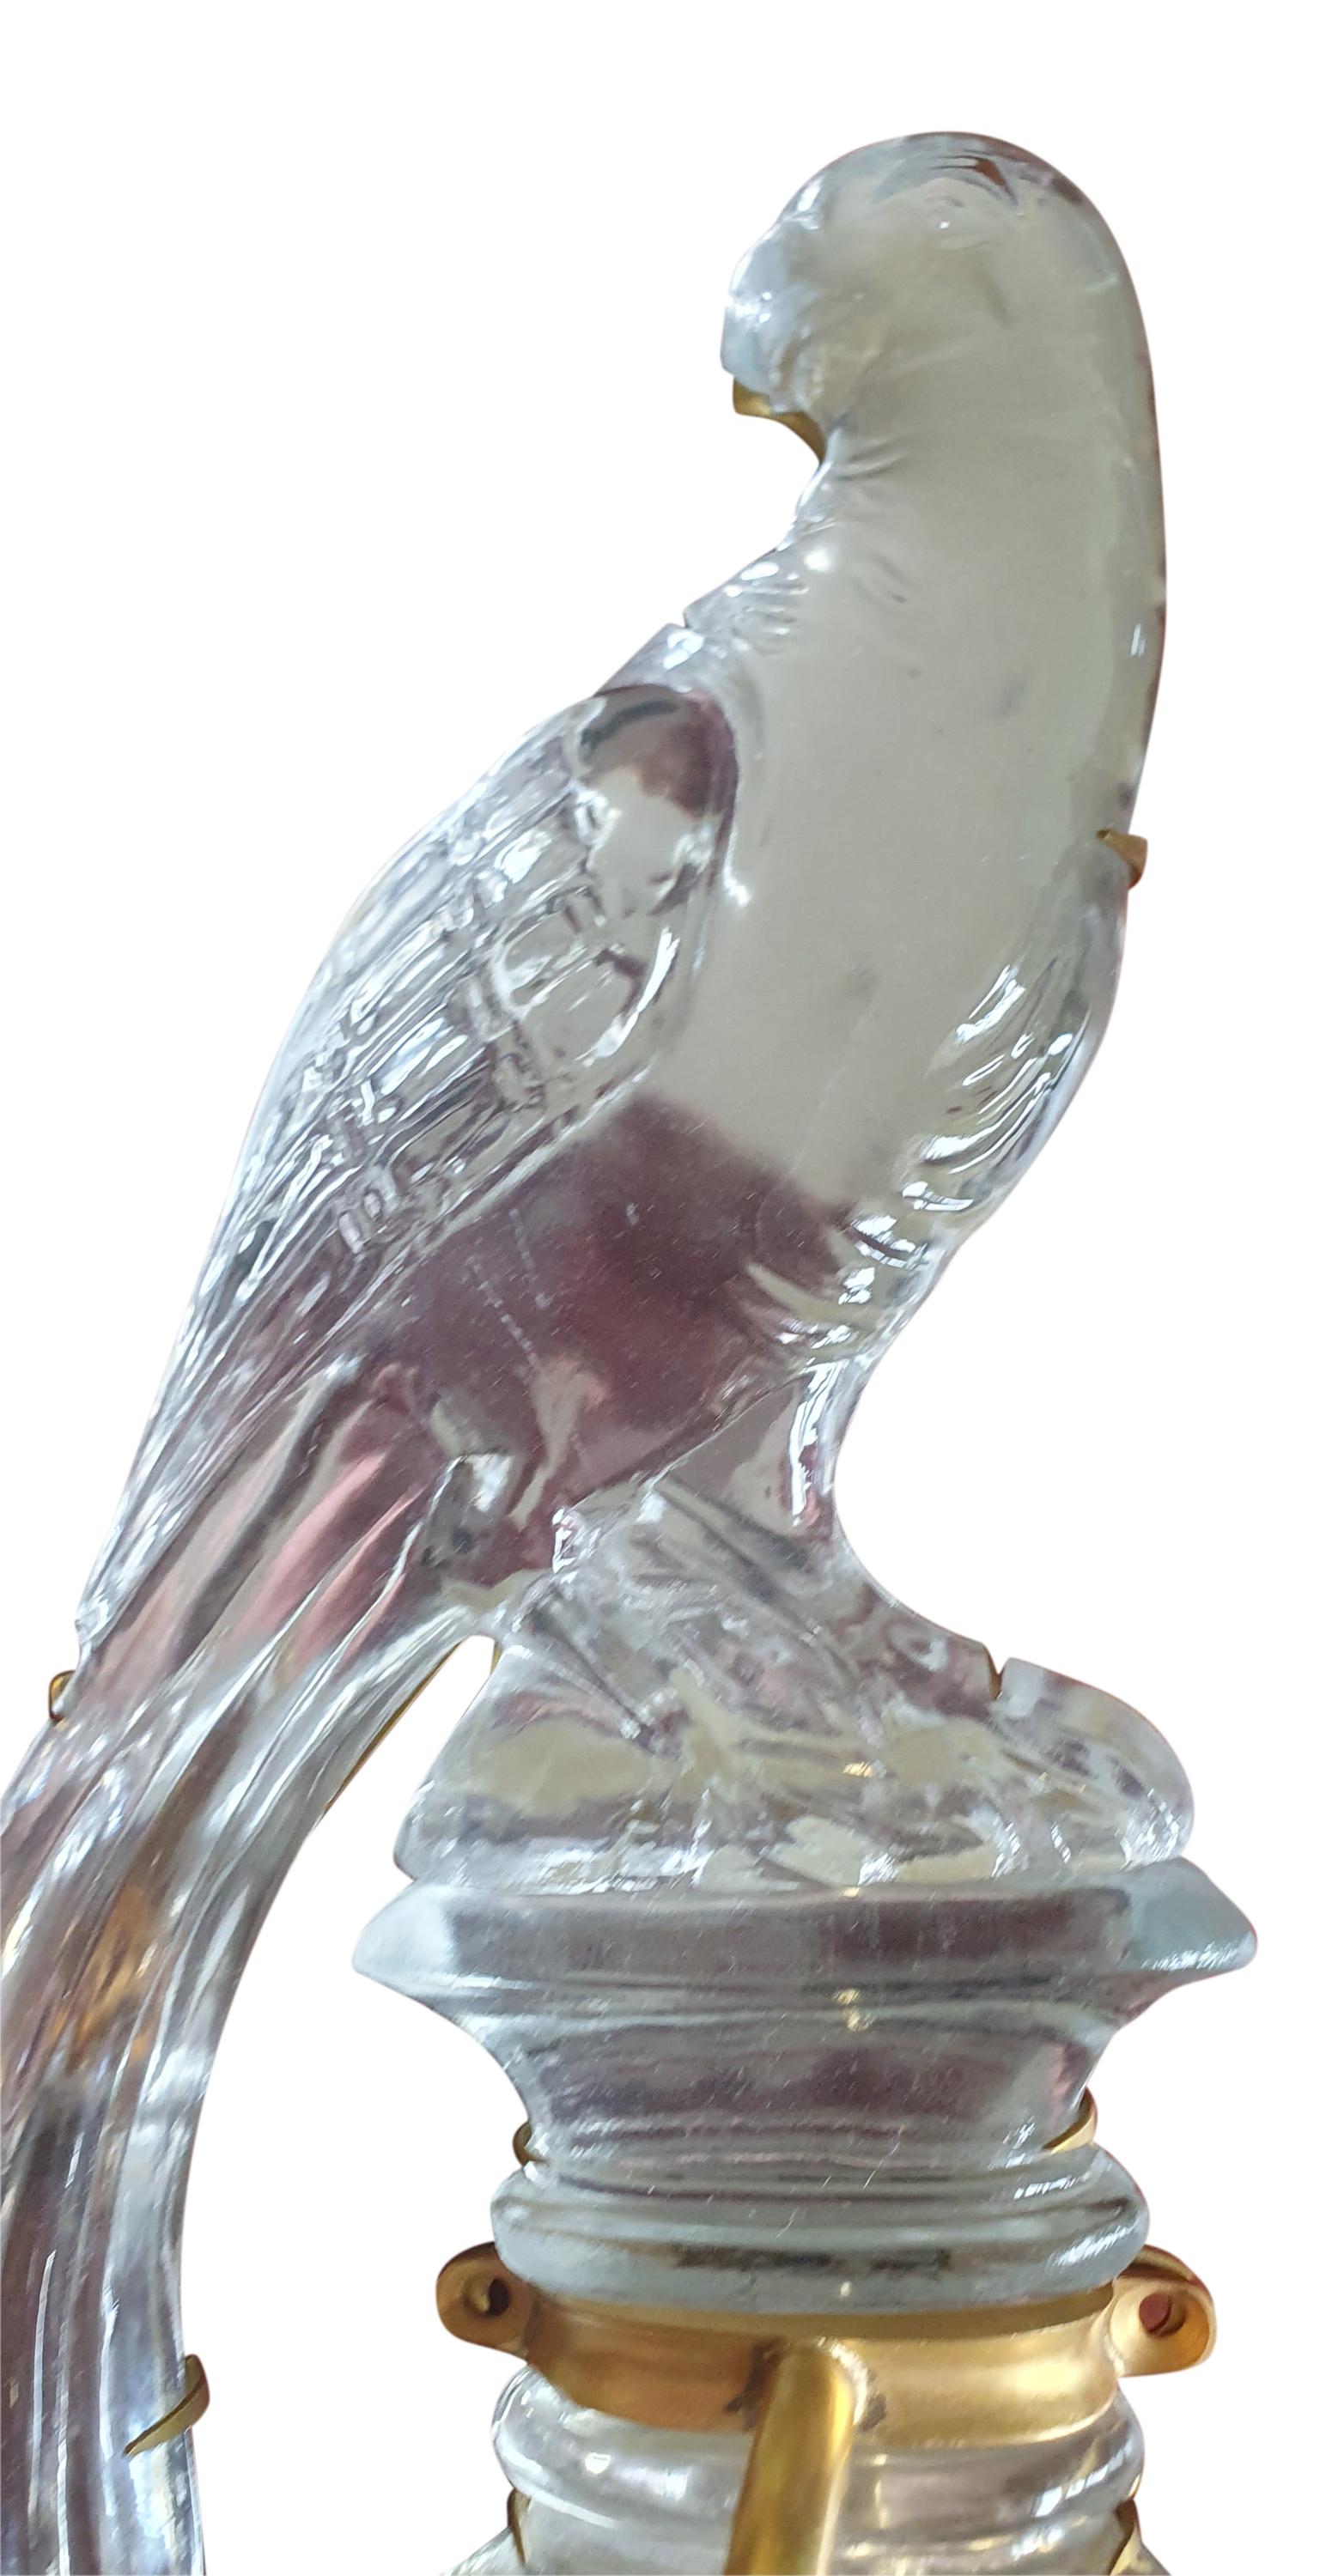 Voici une superbe applique murale en cristal de Bohème de la Maison Baguès en parfait état. Le perroquet, symbole de Baguès, apparaît dans les créations des années 1920 et devient rapidement une icône intemporelle de la marque. 

Réalisé en